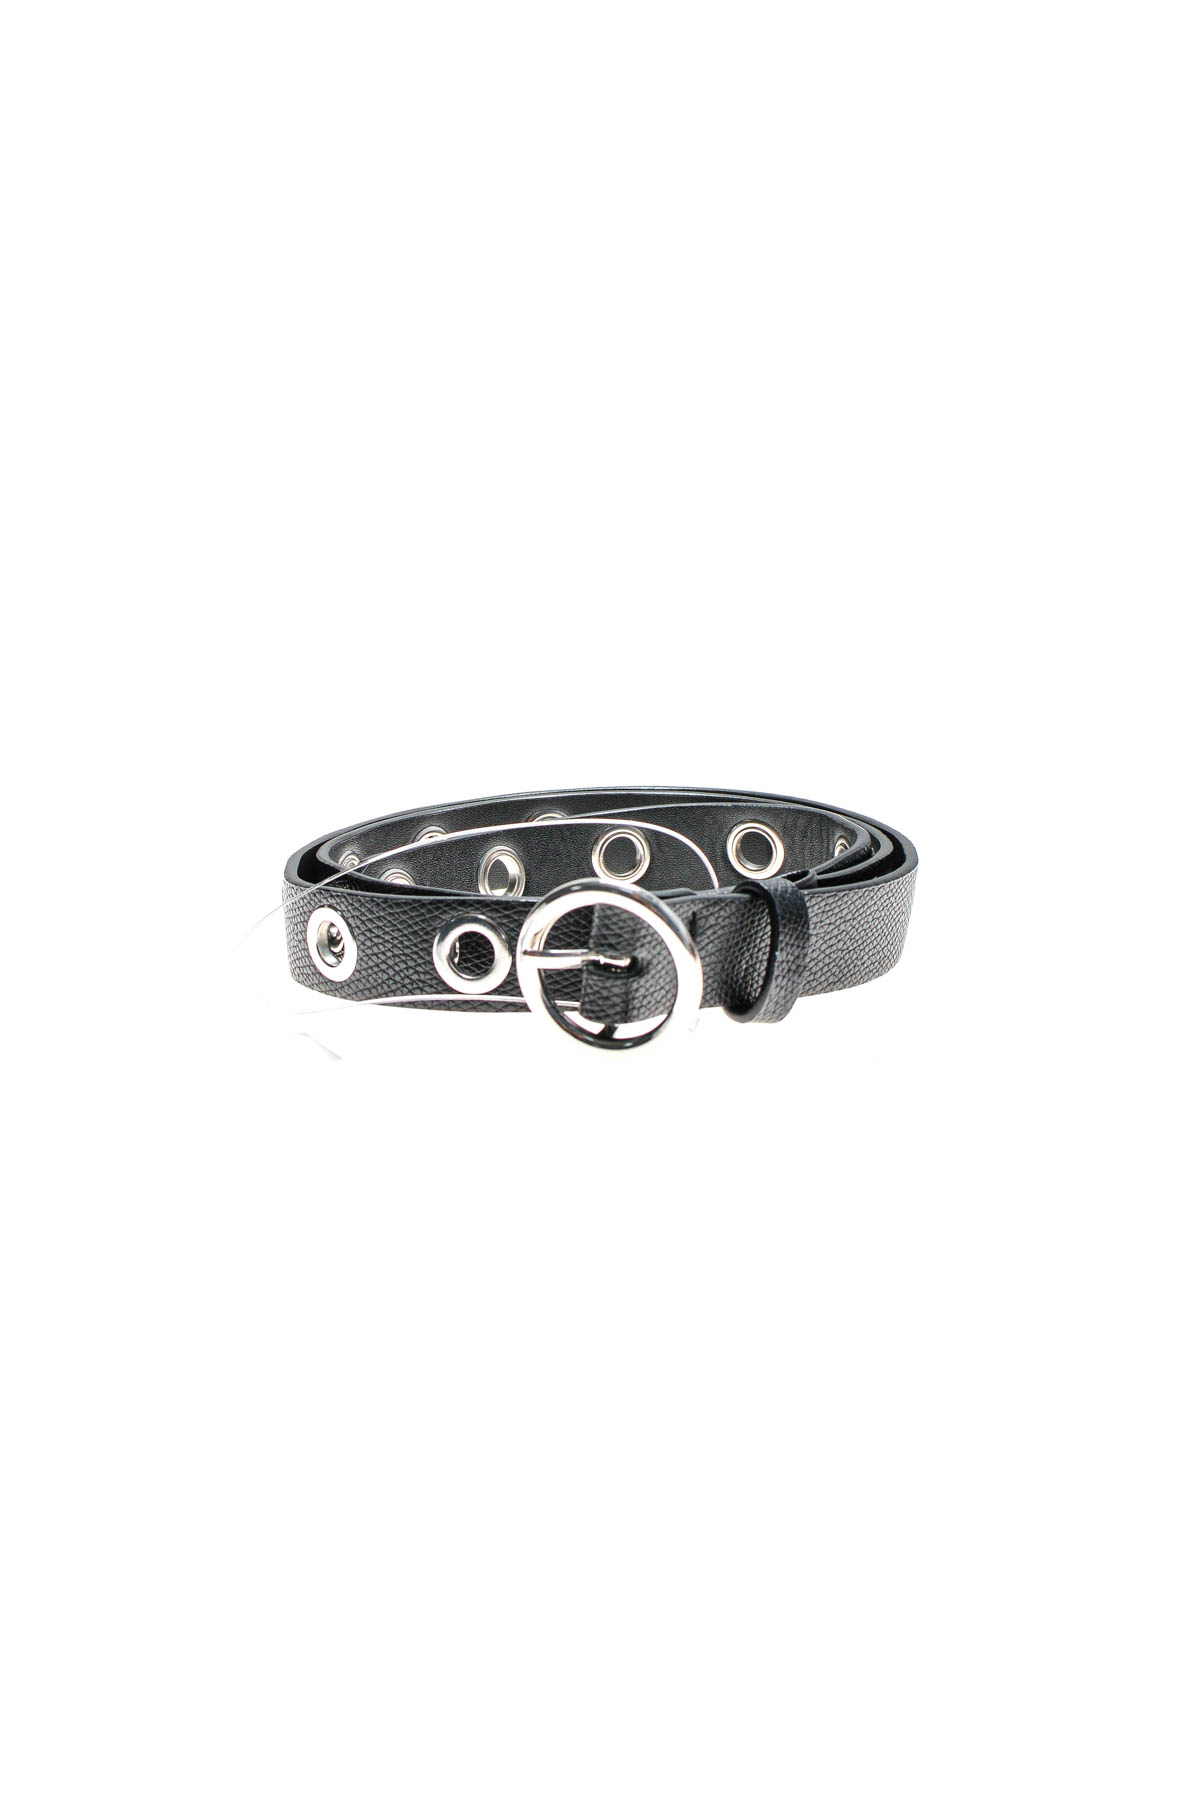 Ladies's belt - H&M - 0